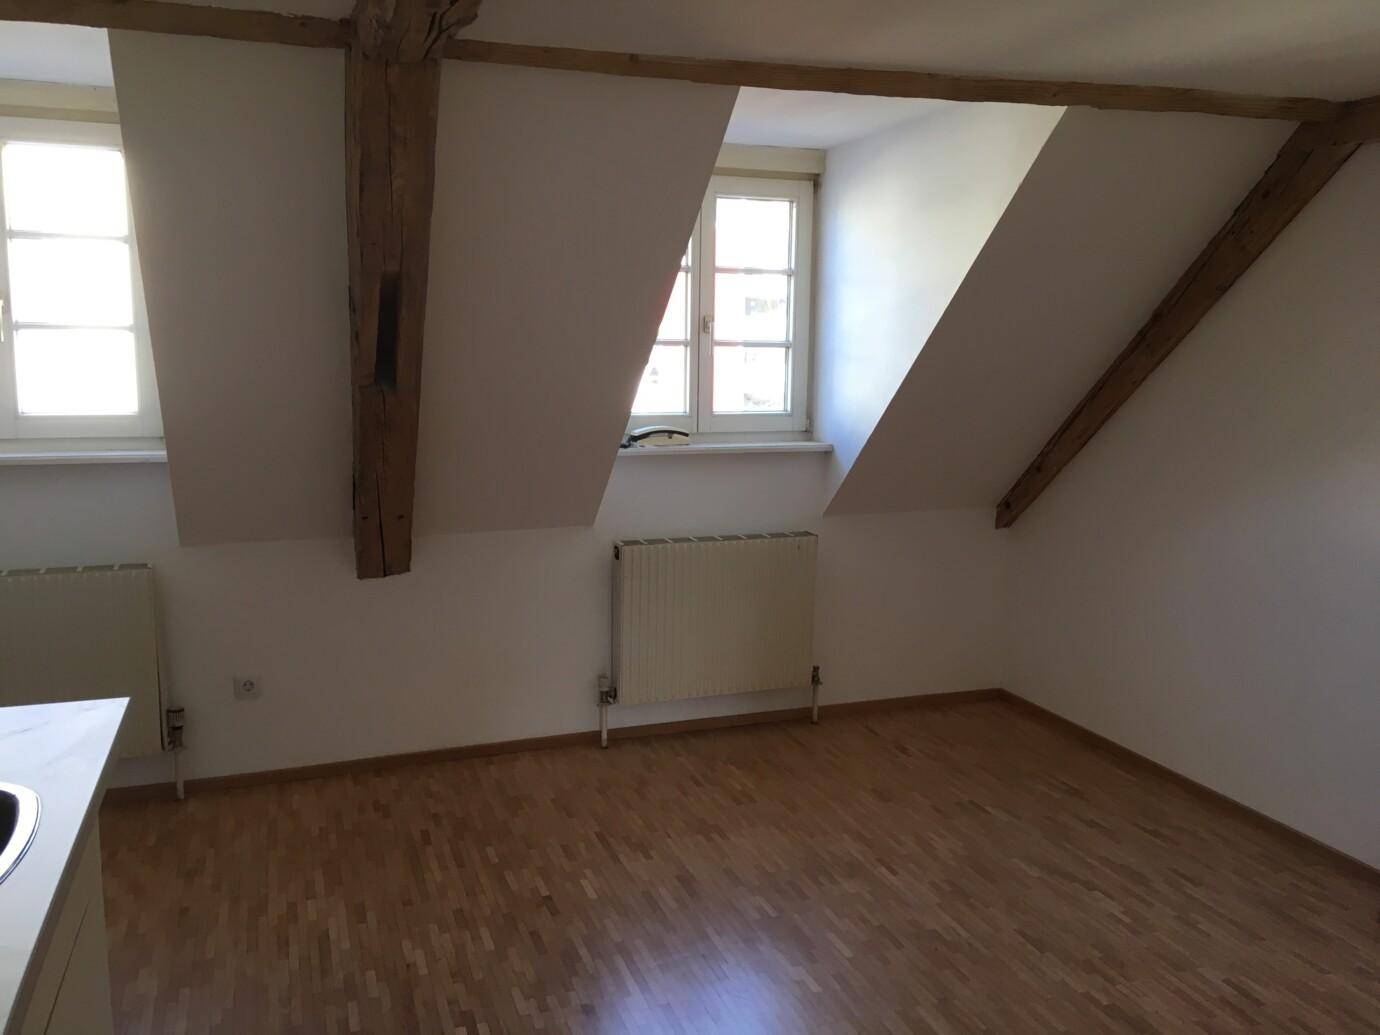 Dachboden mit Dachschräge, leerer Raum mit Holzboden und Fenster nach draußen